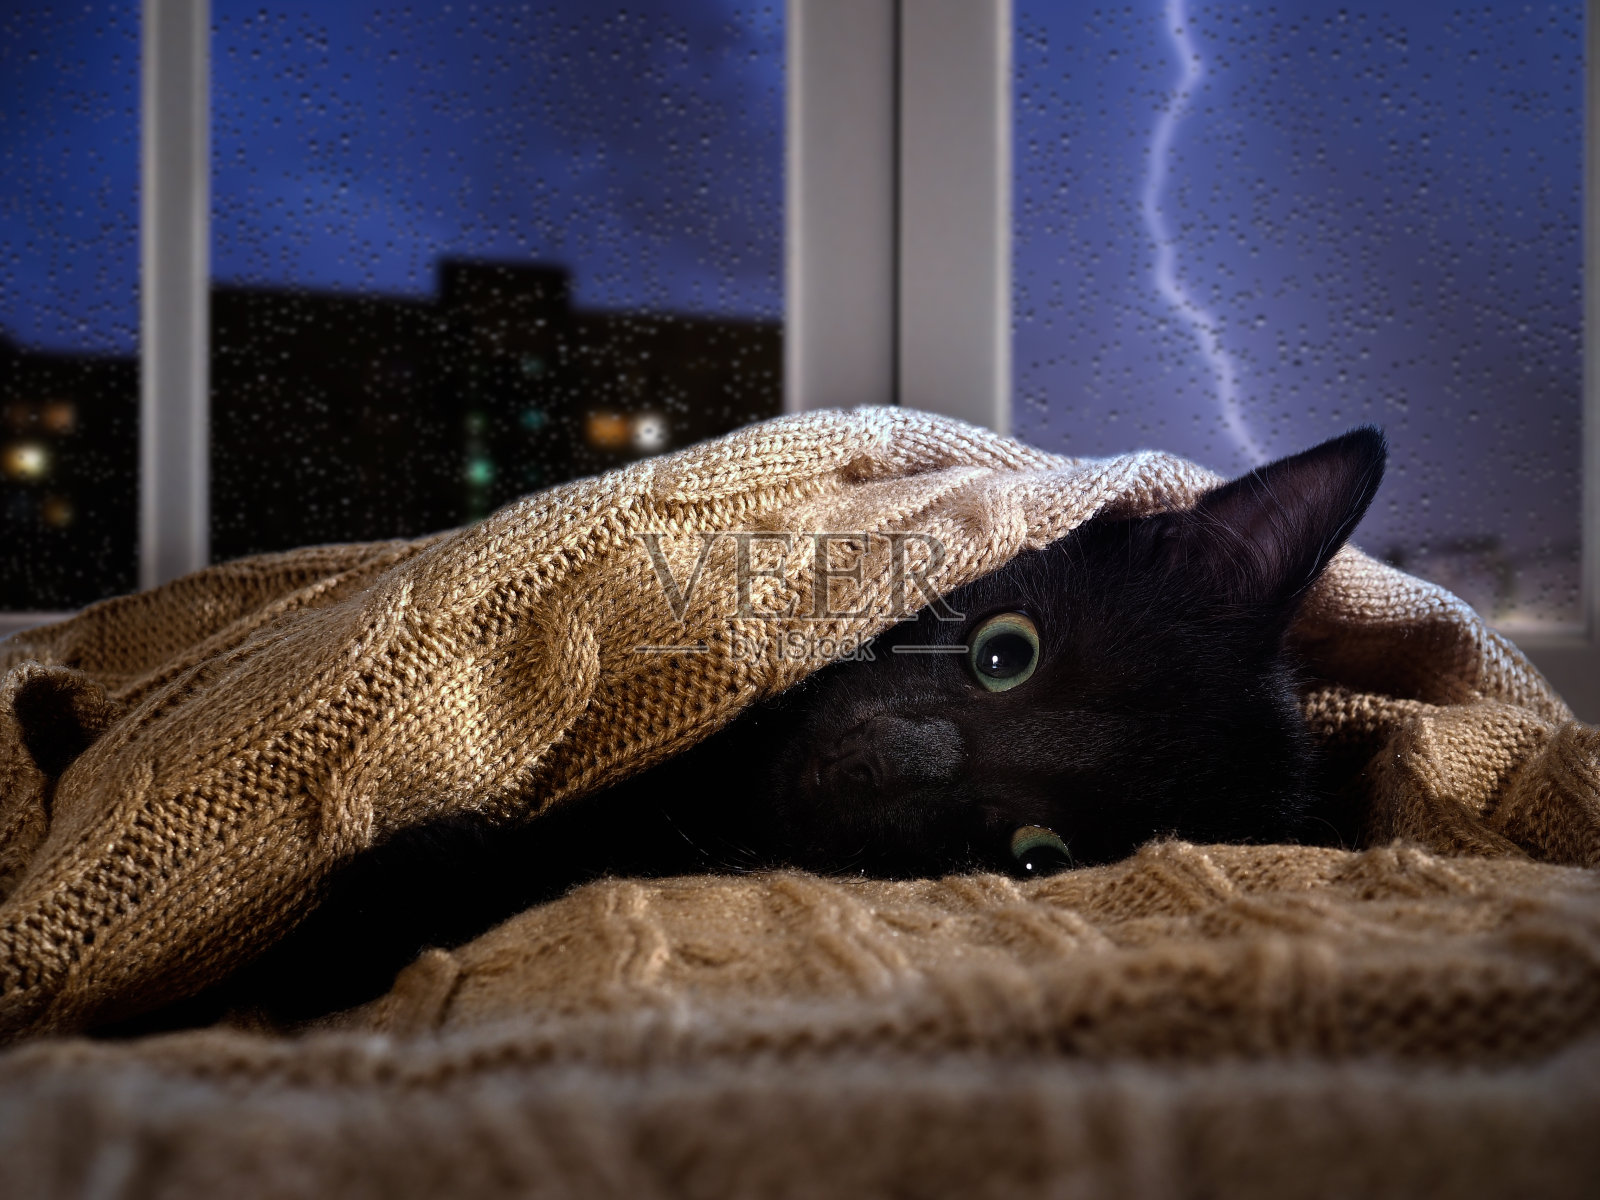 猫害怕窗外的雷声和闪电。小猫躲在毯子下面照片摄影图片